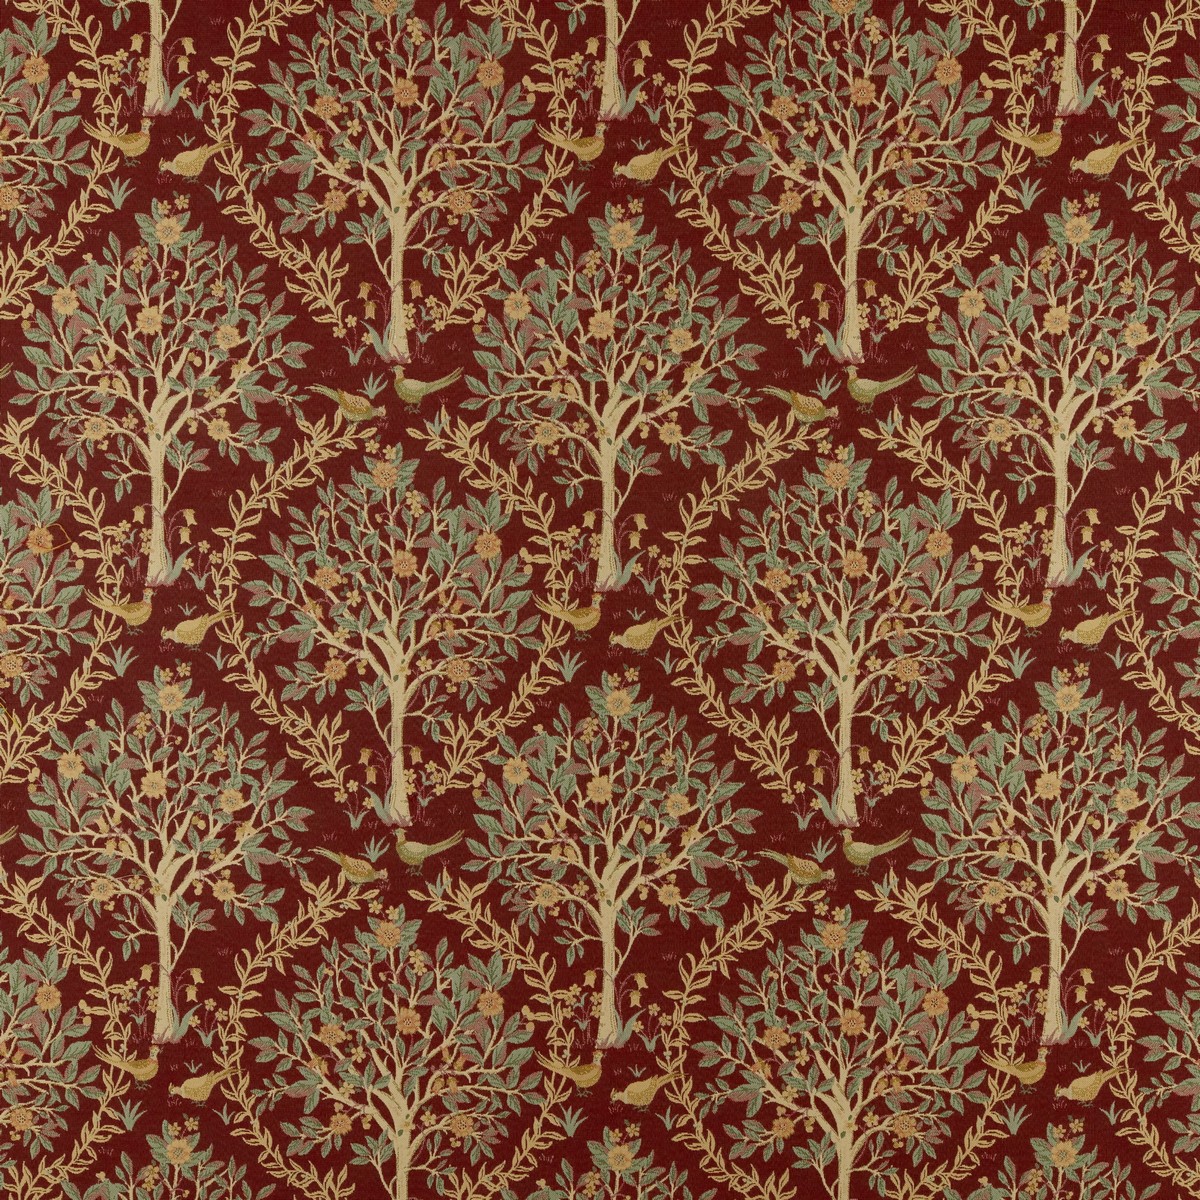 Bedgebury Merlot Fabric by Ashley Wilde